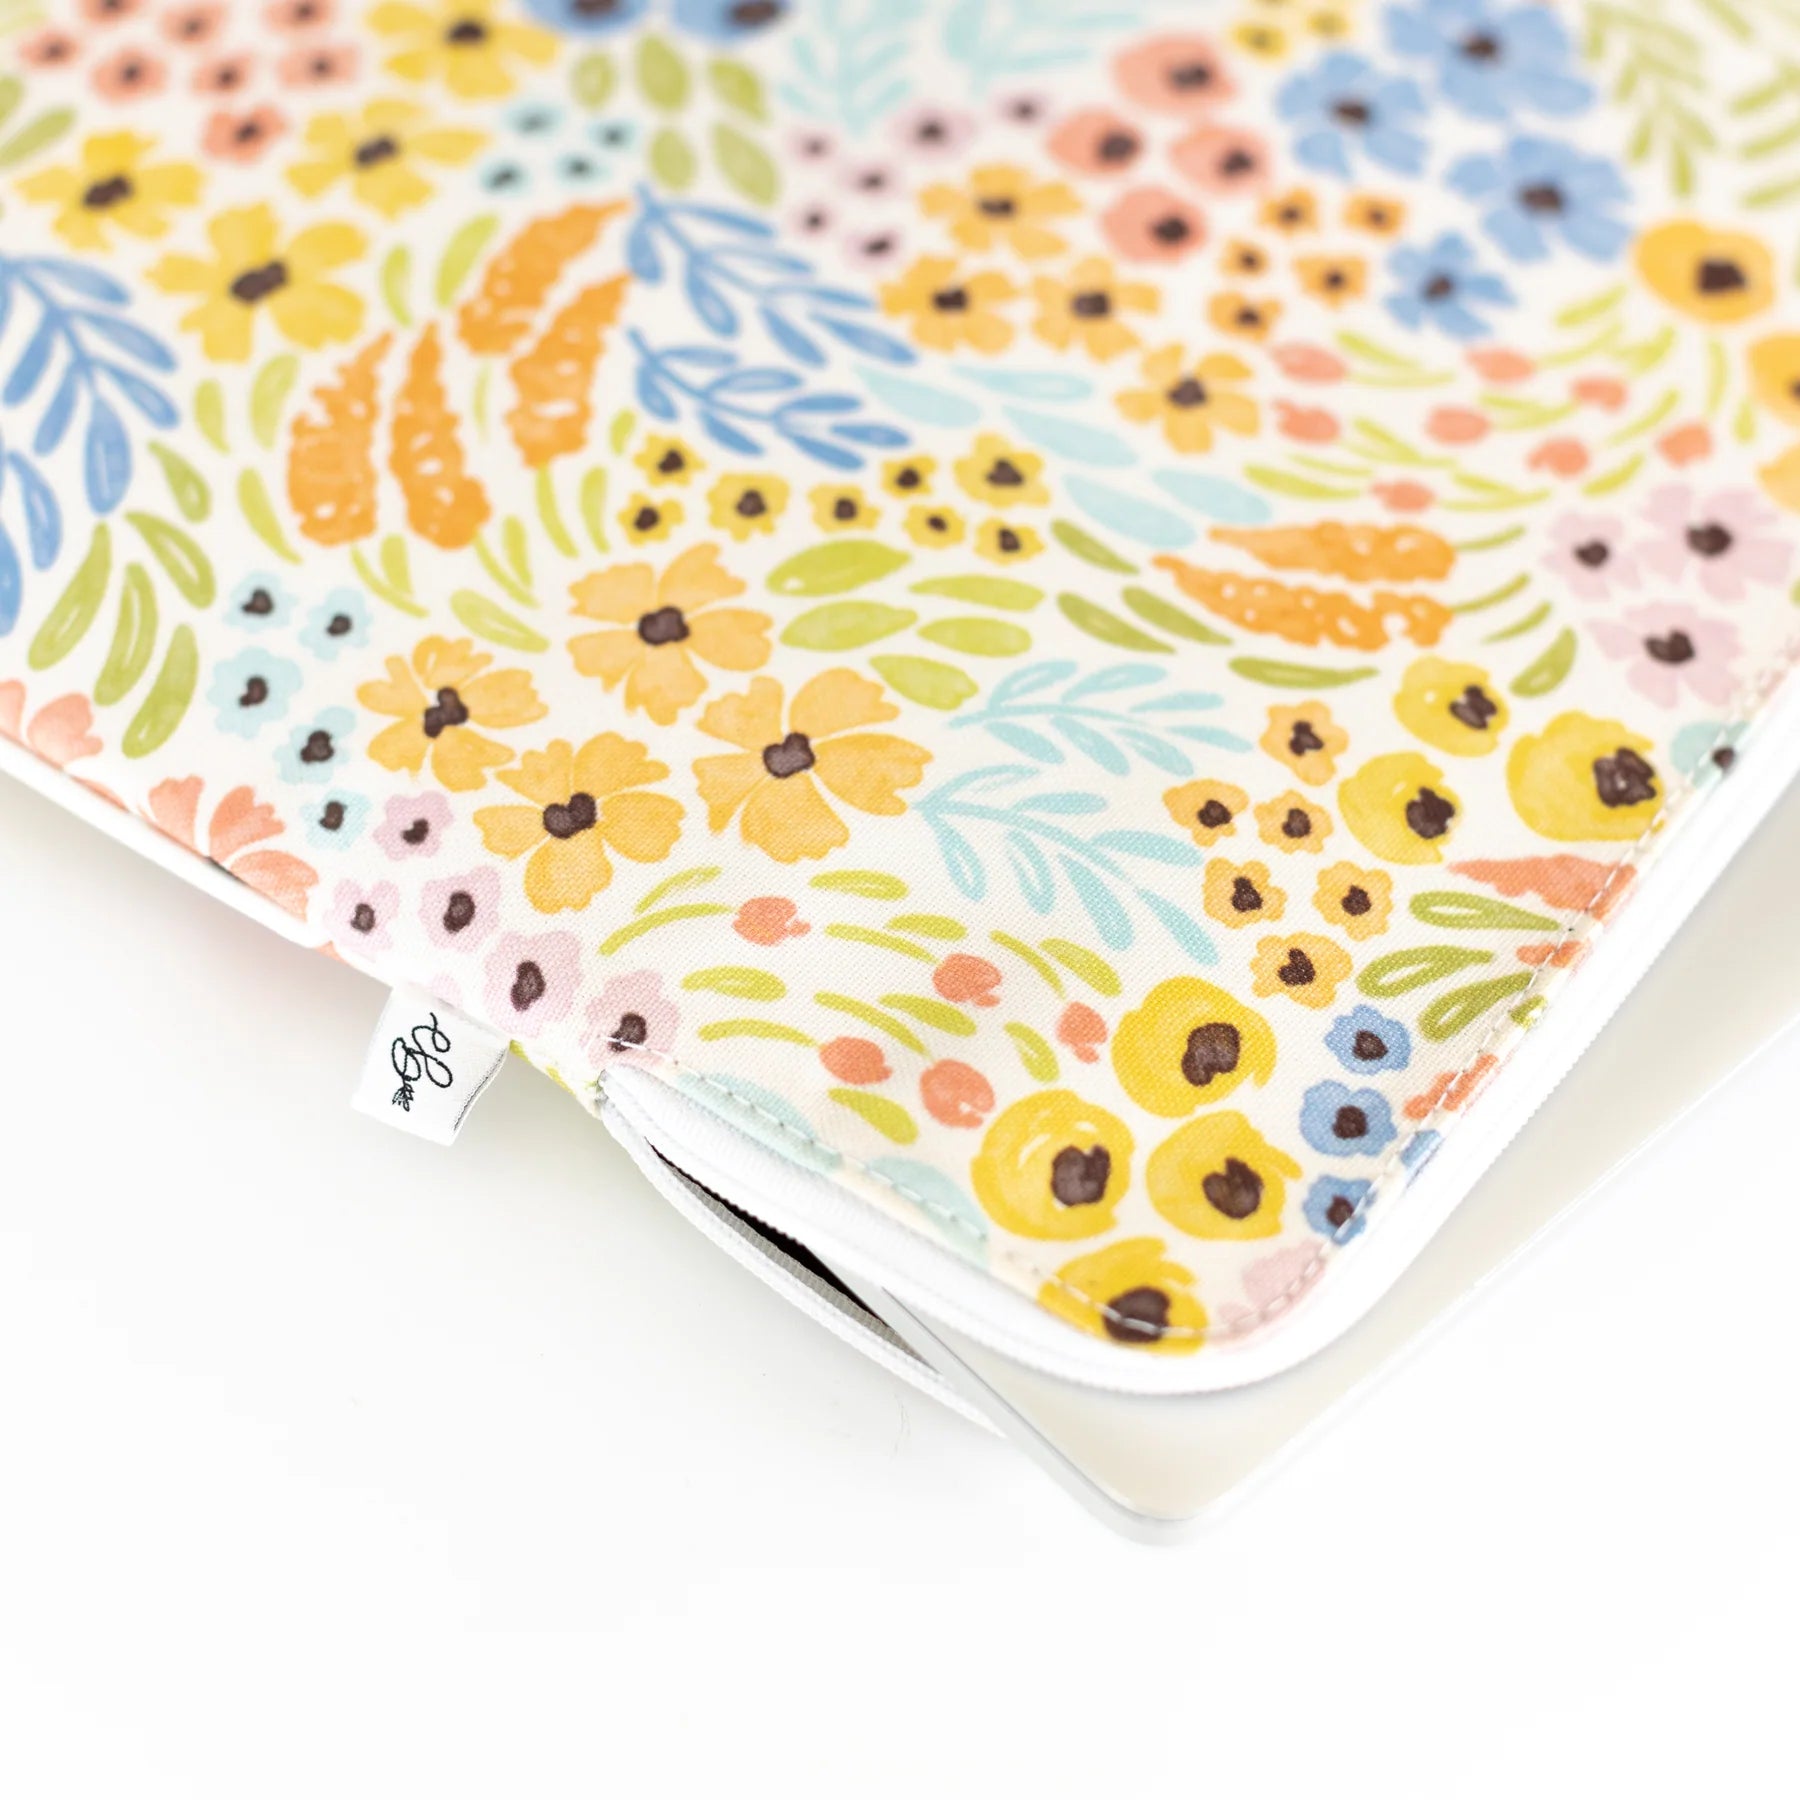 Pastel Wildflower Laptop Sleeve 15"